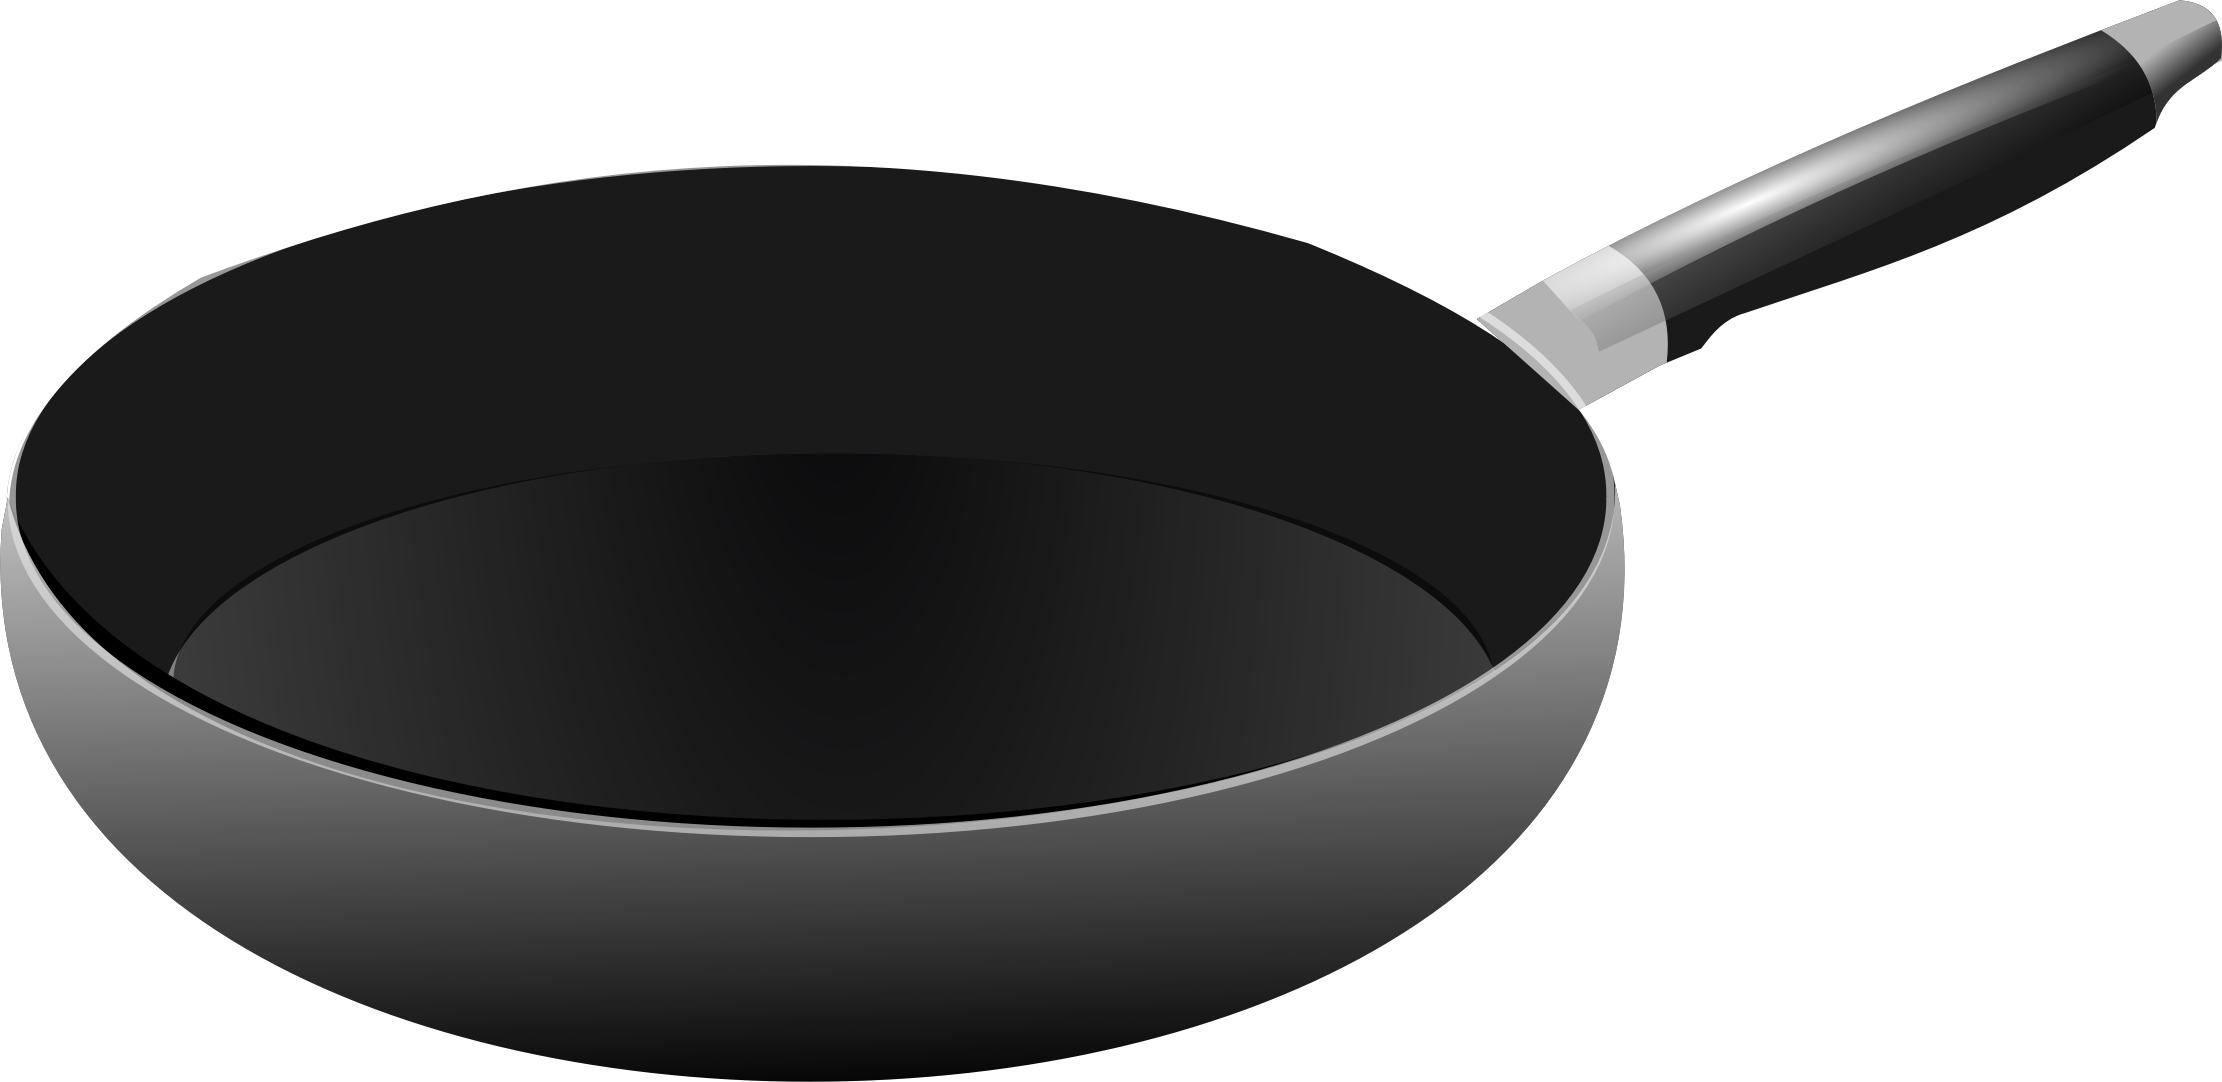 Cooking Pan PNG Image